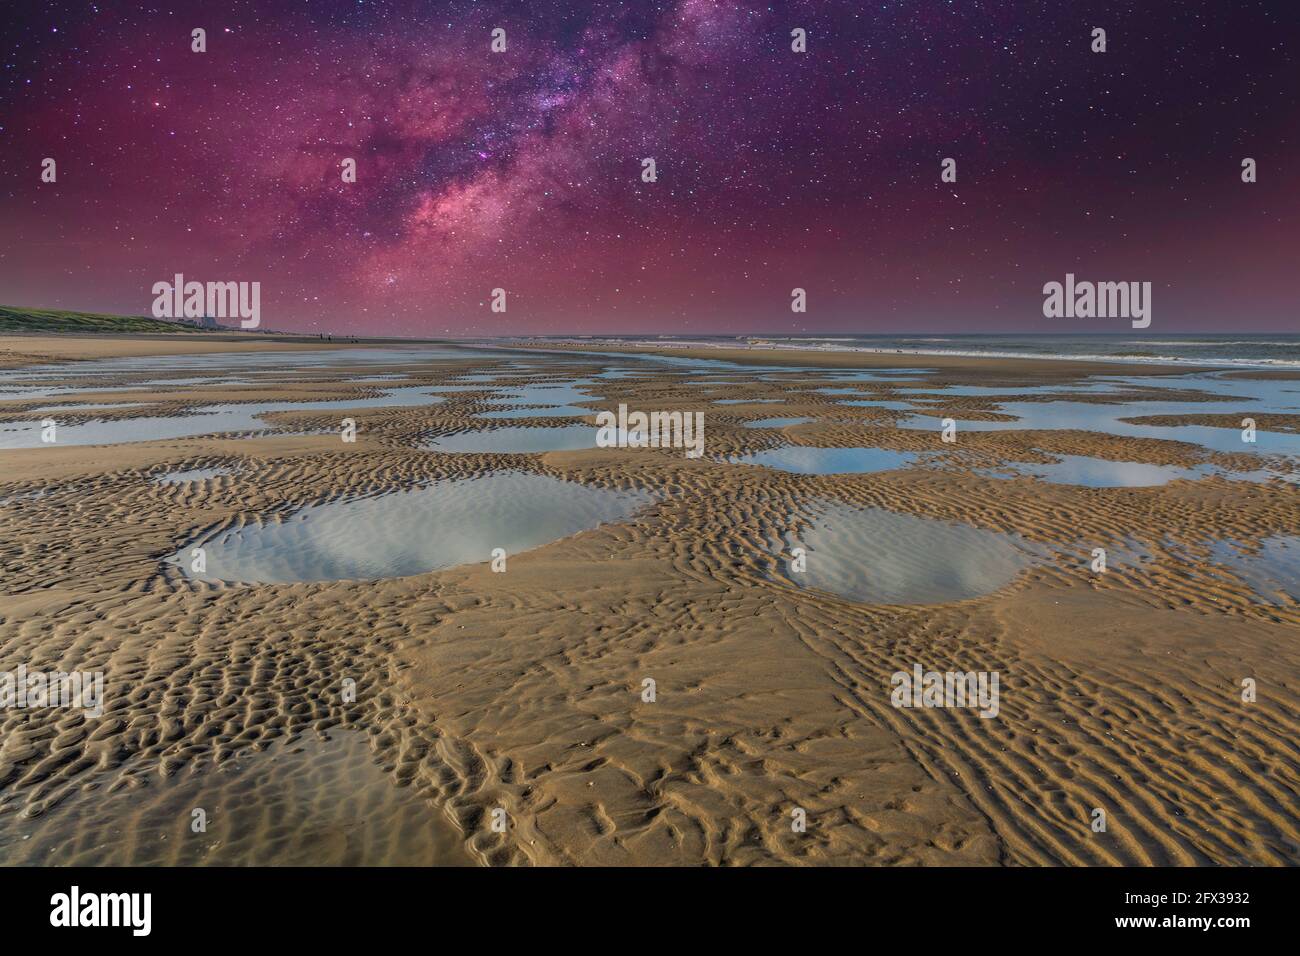 Scena notturna con cielo stellato limpido sul deserto paesaggio costiero con dune, mare e spiaggia con laghi di acqua salata in ritardo con bassa marea Foto Stock